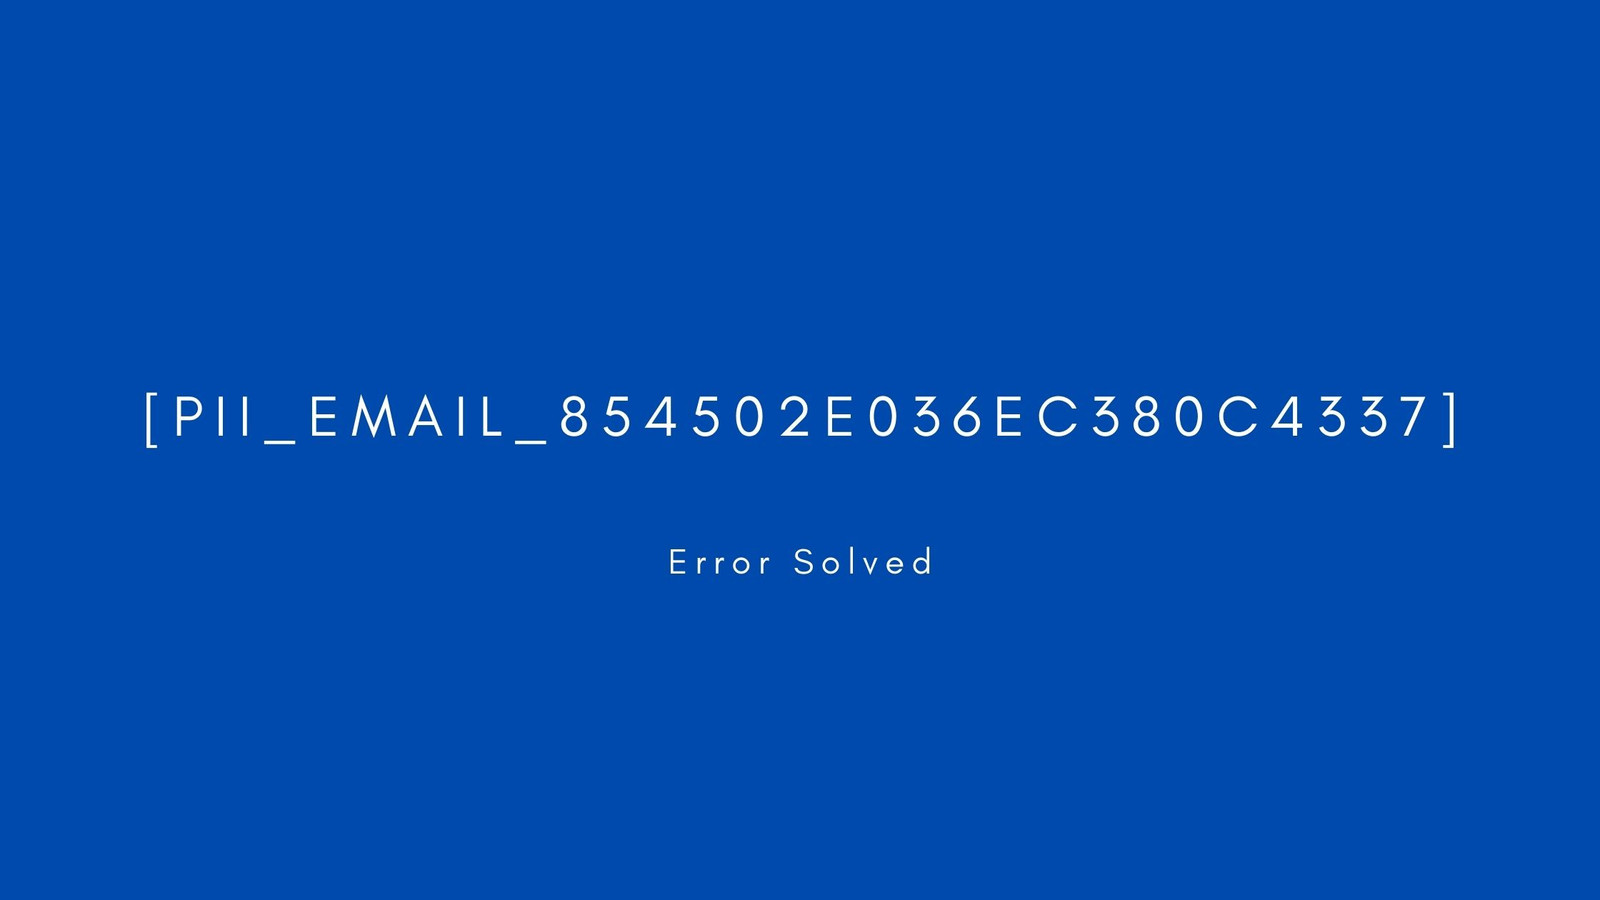 [pii_email_854502e036ec380c4337] Error resolved